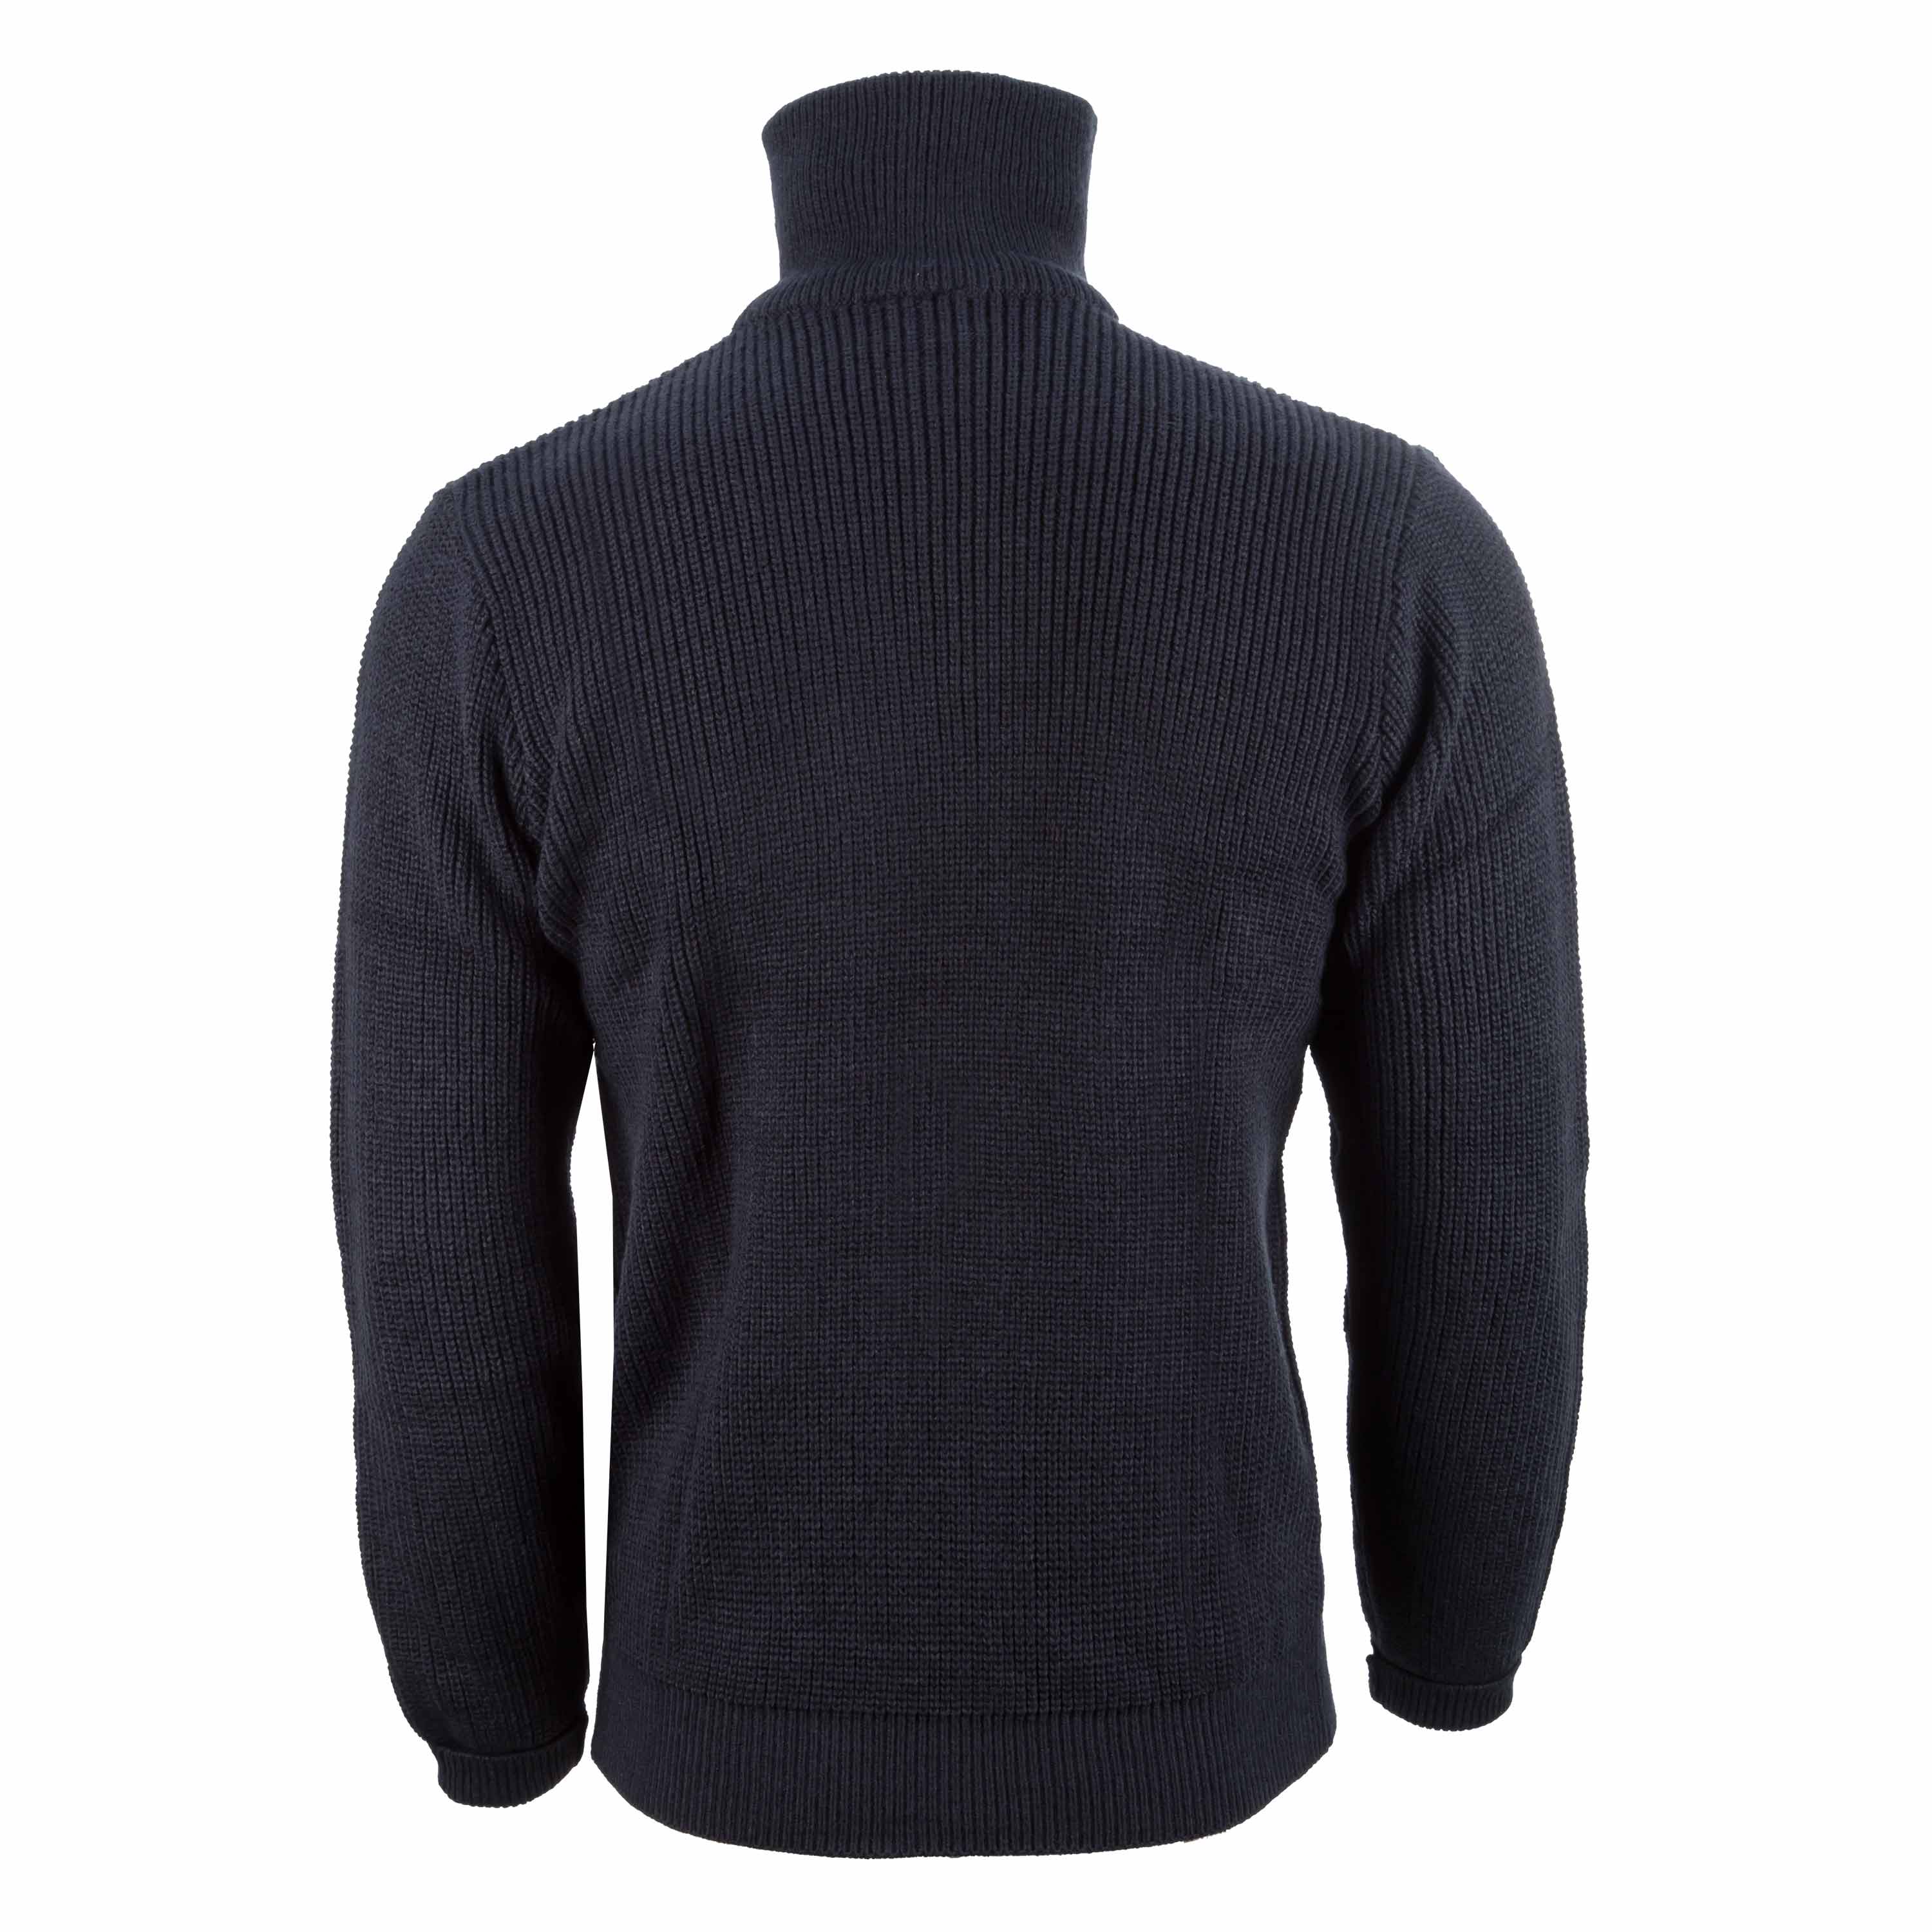 Sweater Troyer 750 g blue | Sweater Troyer 750 g blue | Sweatshirts ...